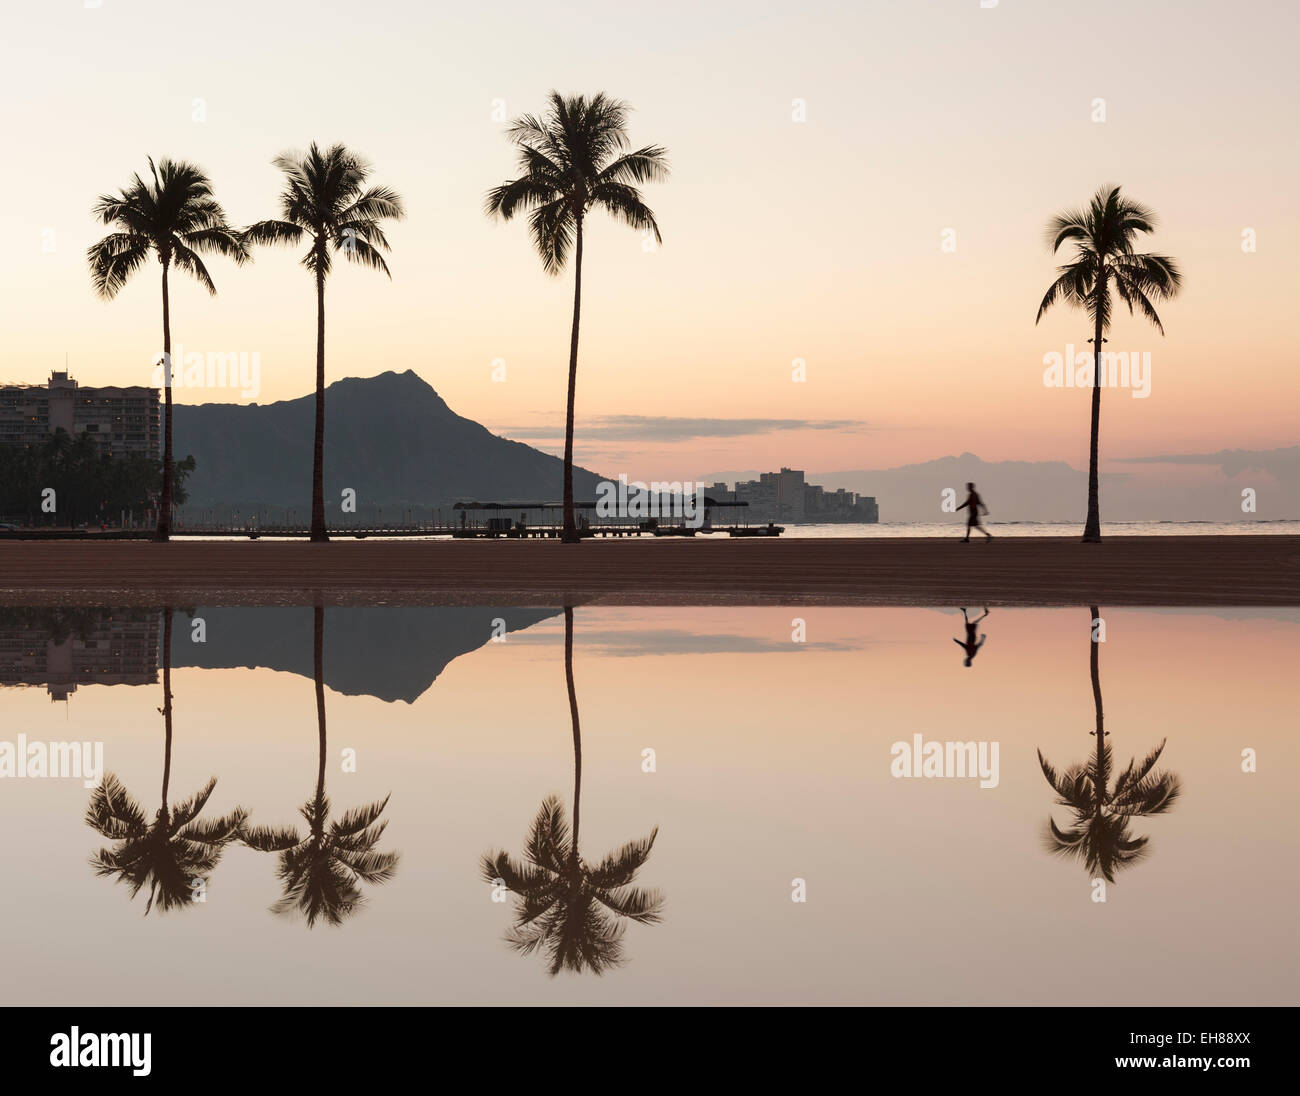 La plage de Waikiki, Oahu, Hawaii - Walker sur la plage au lever du soleil avec Diamond Head derrière Banque D'Images